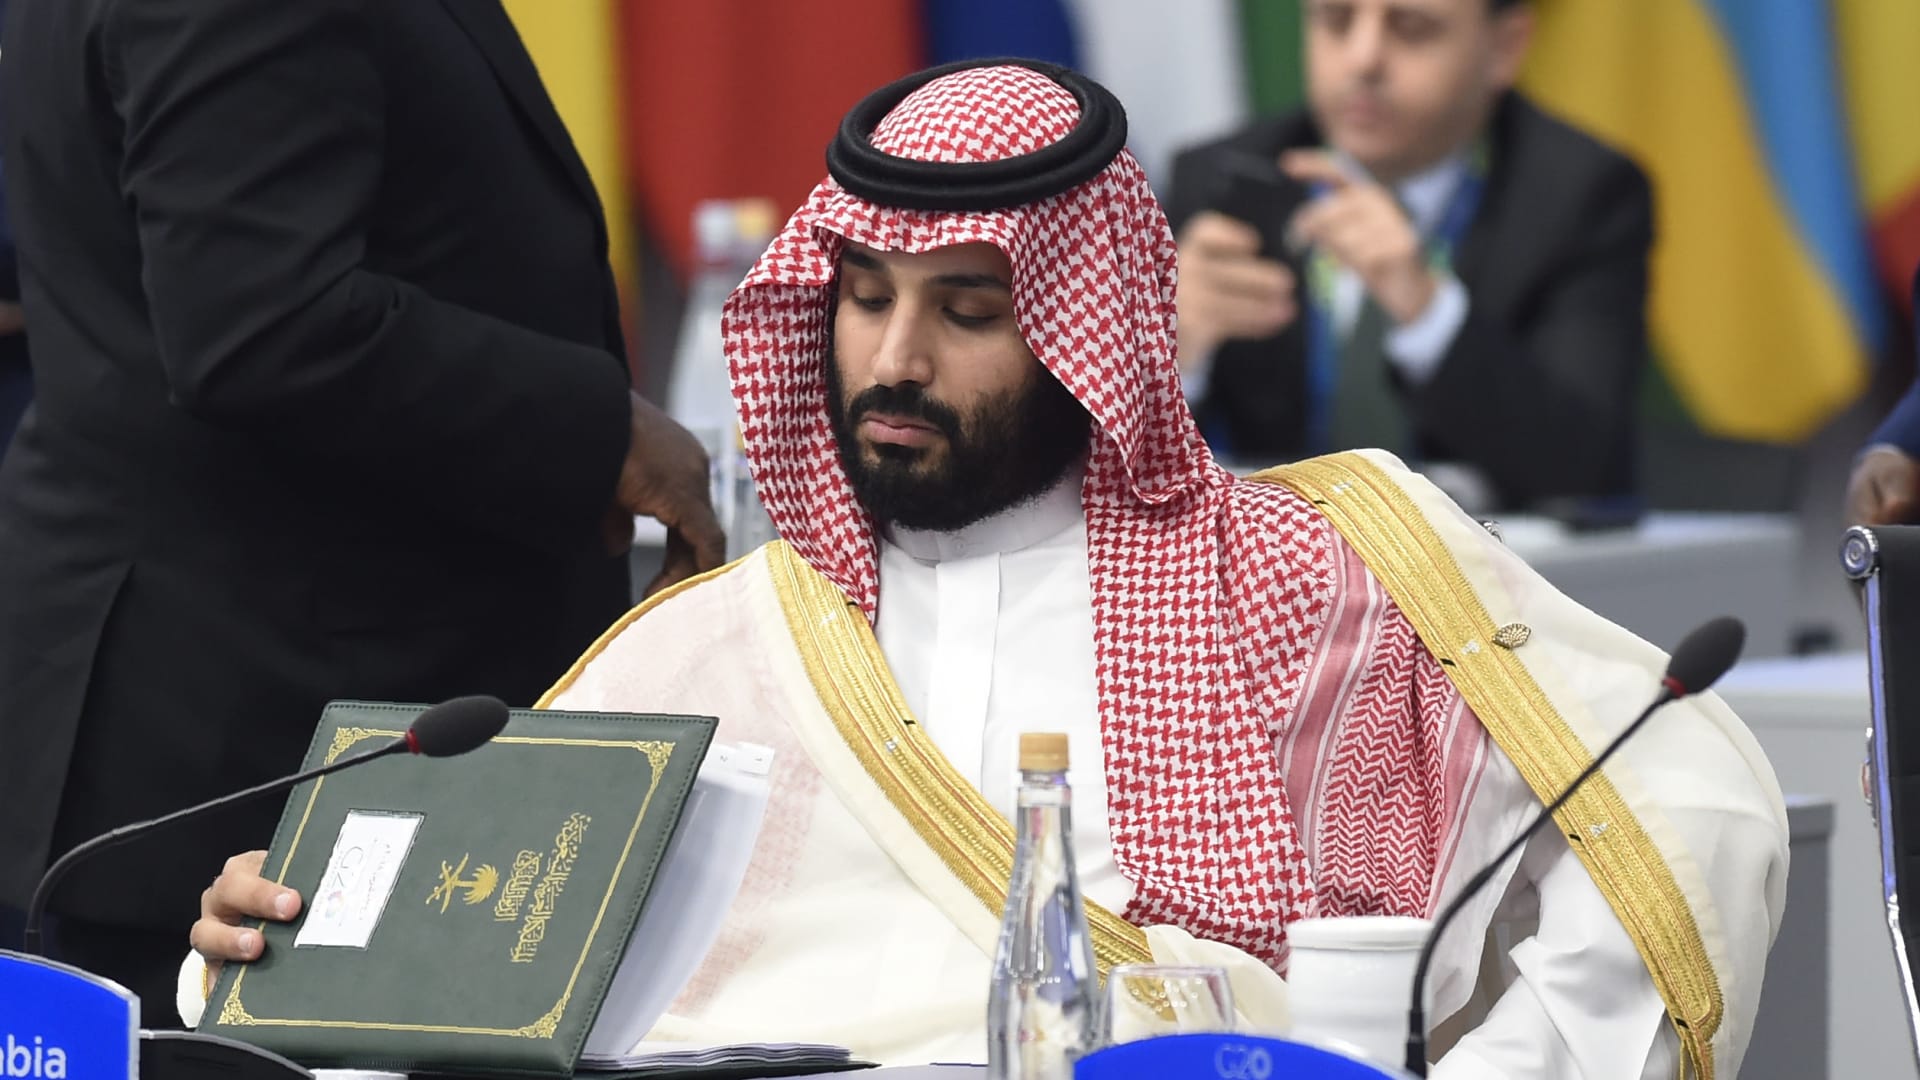 صحيفة تايمز البريطانية: كيف يتلاعب أمير السعودية القاسي بالعالم؟